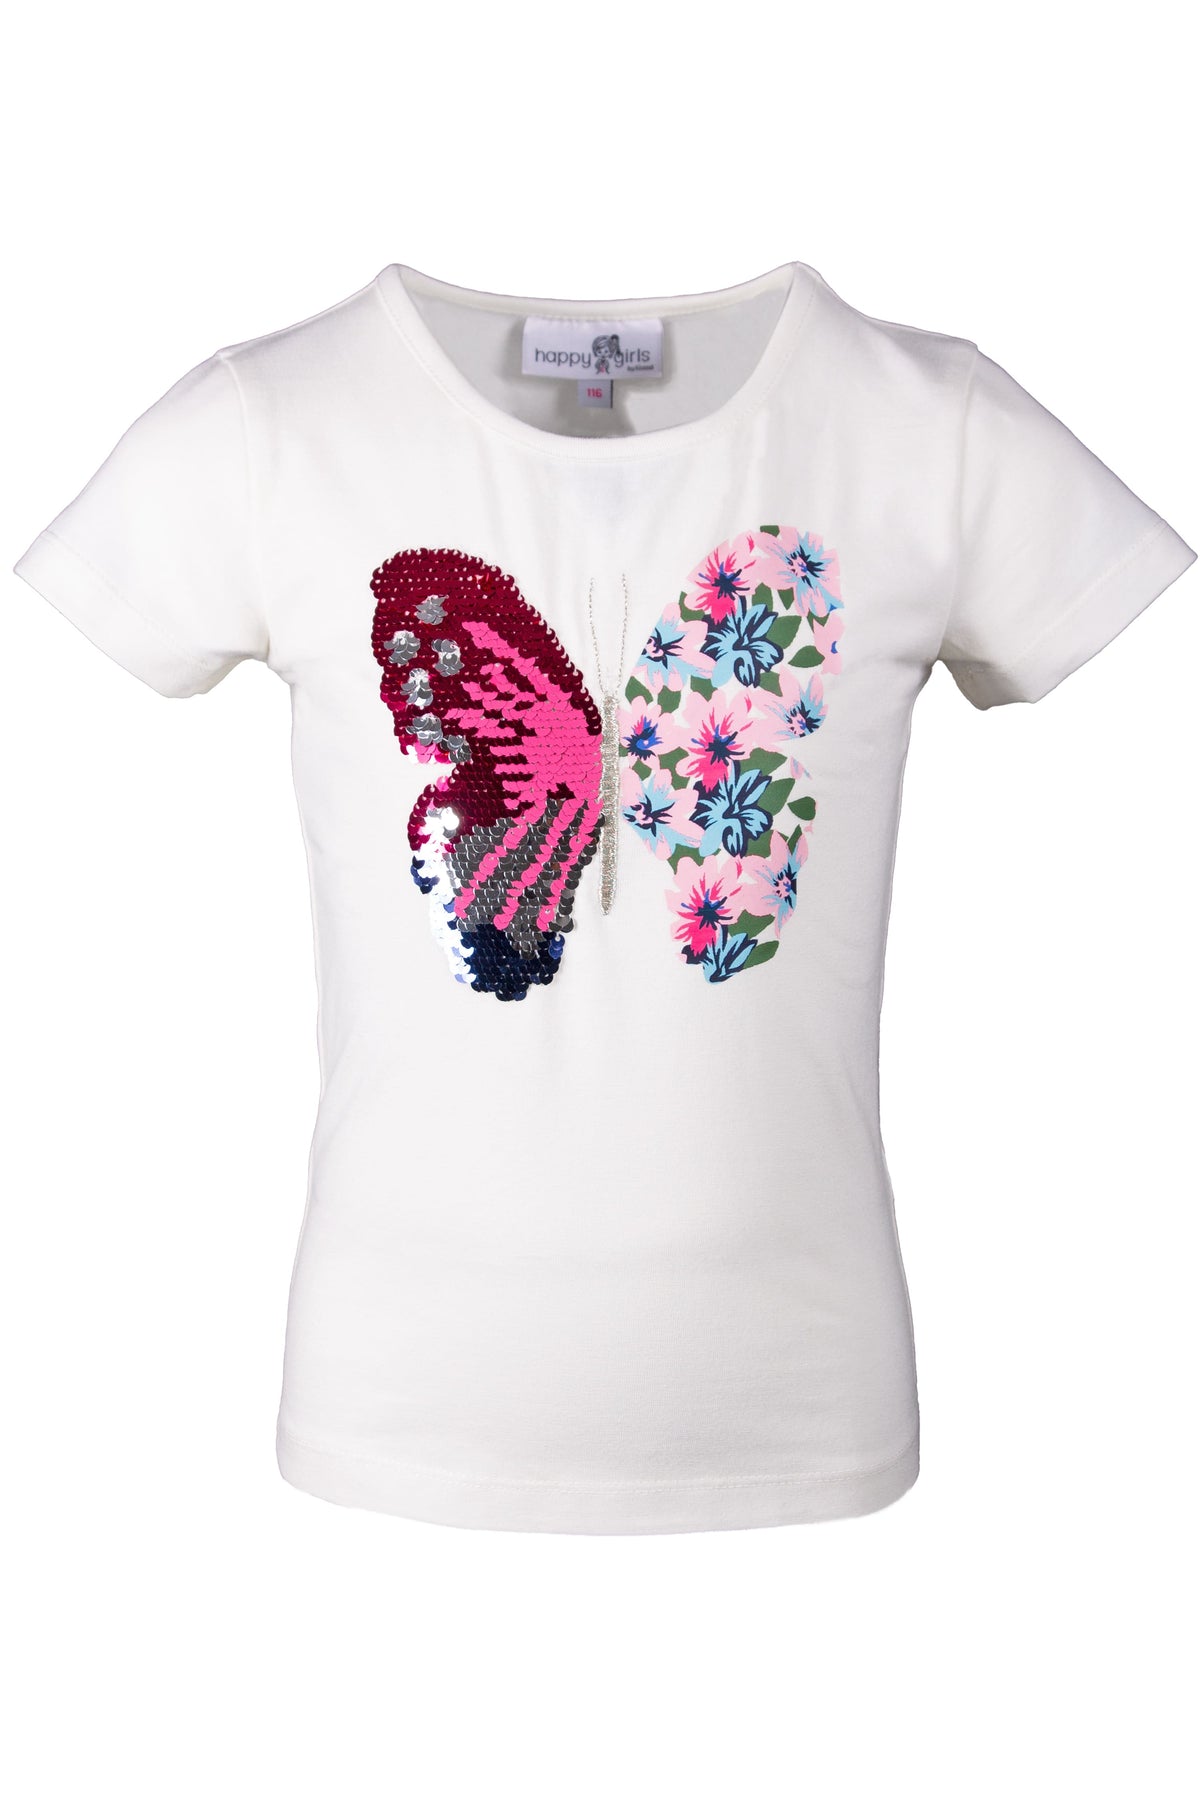 T-Shirt Schmetterling von Happy Girls